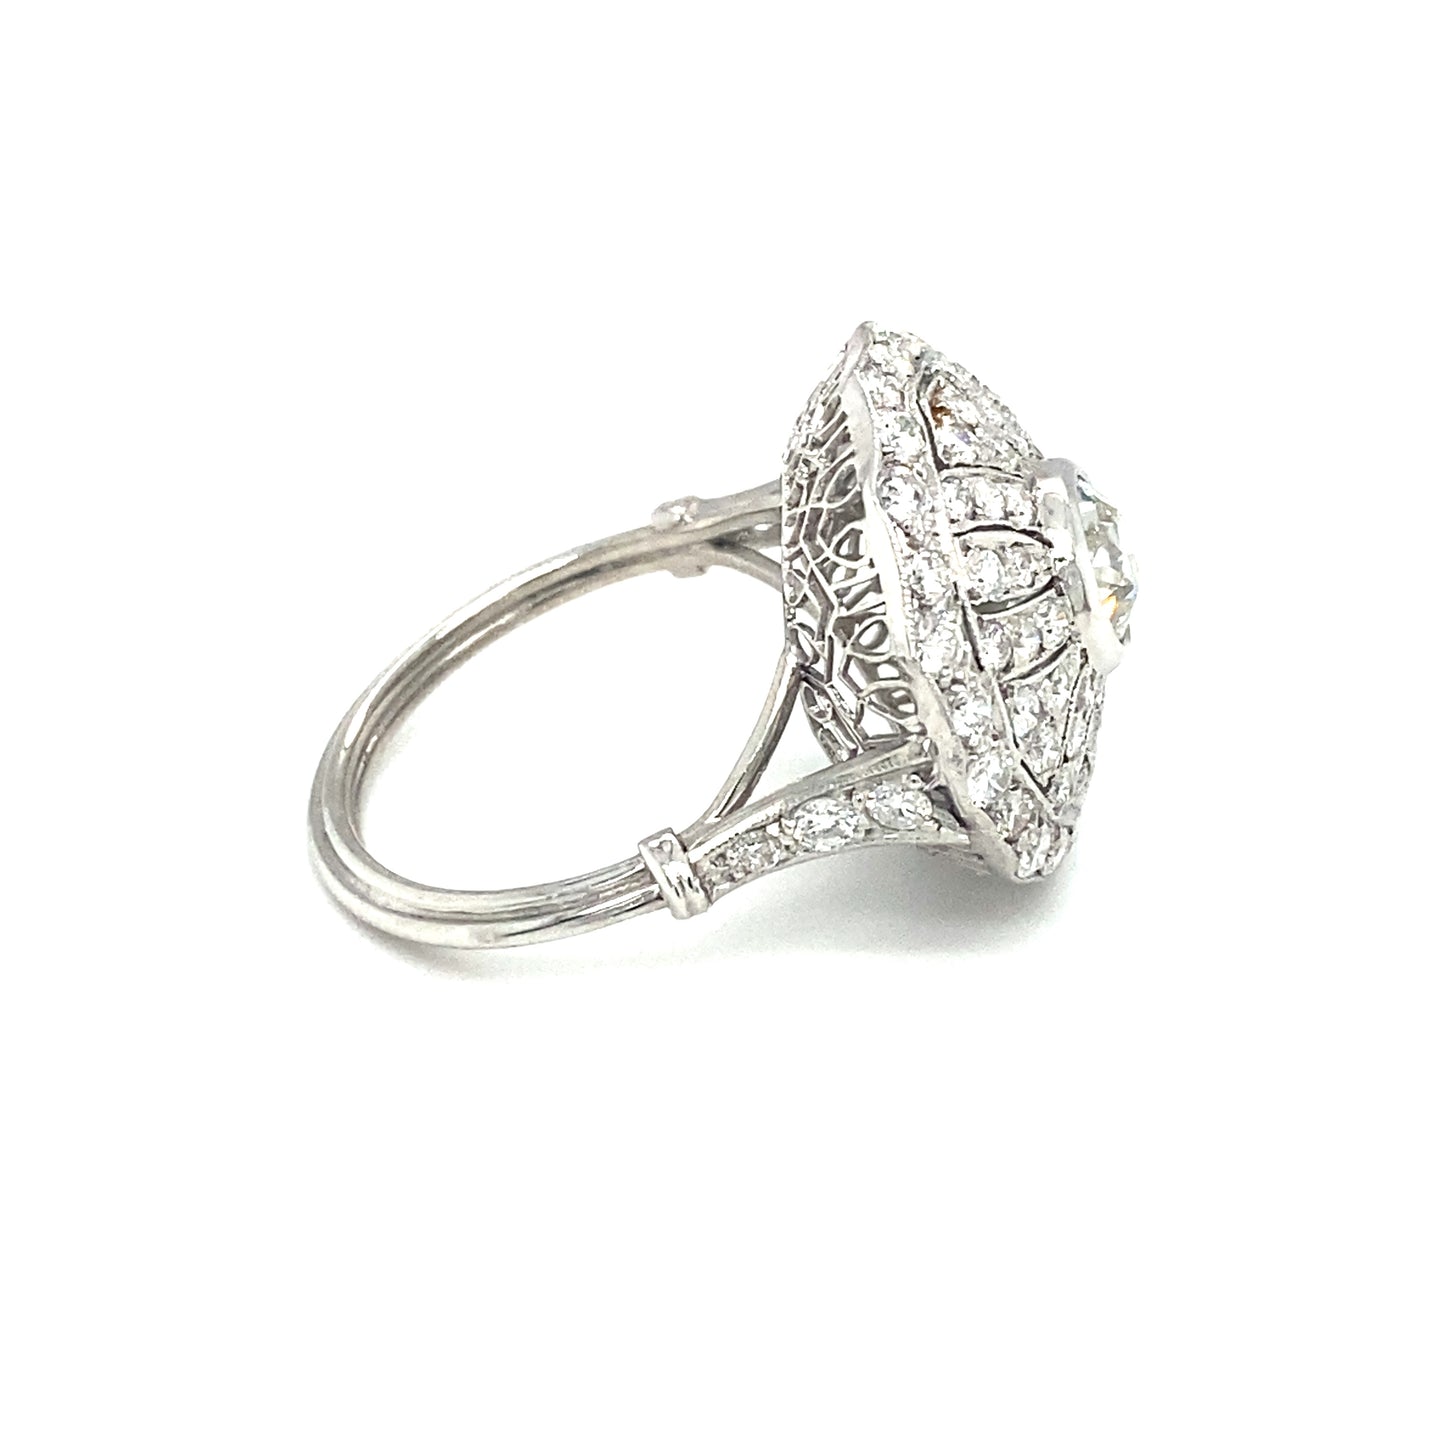 Circa 1930s Art Deco 1.99CTW Diamond Princess Cocktail Ring in Platinum